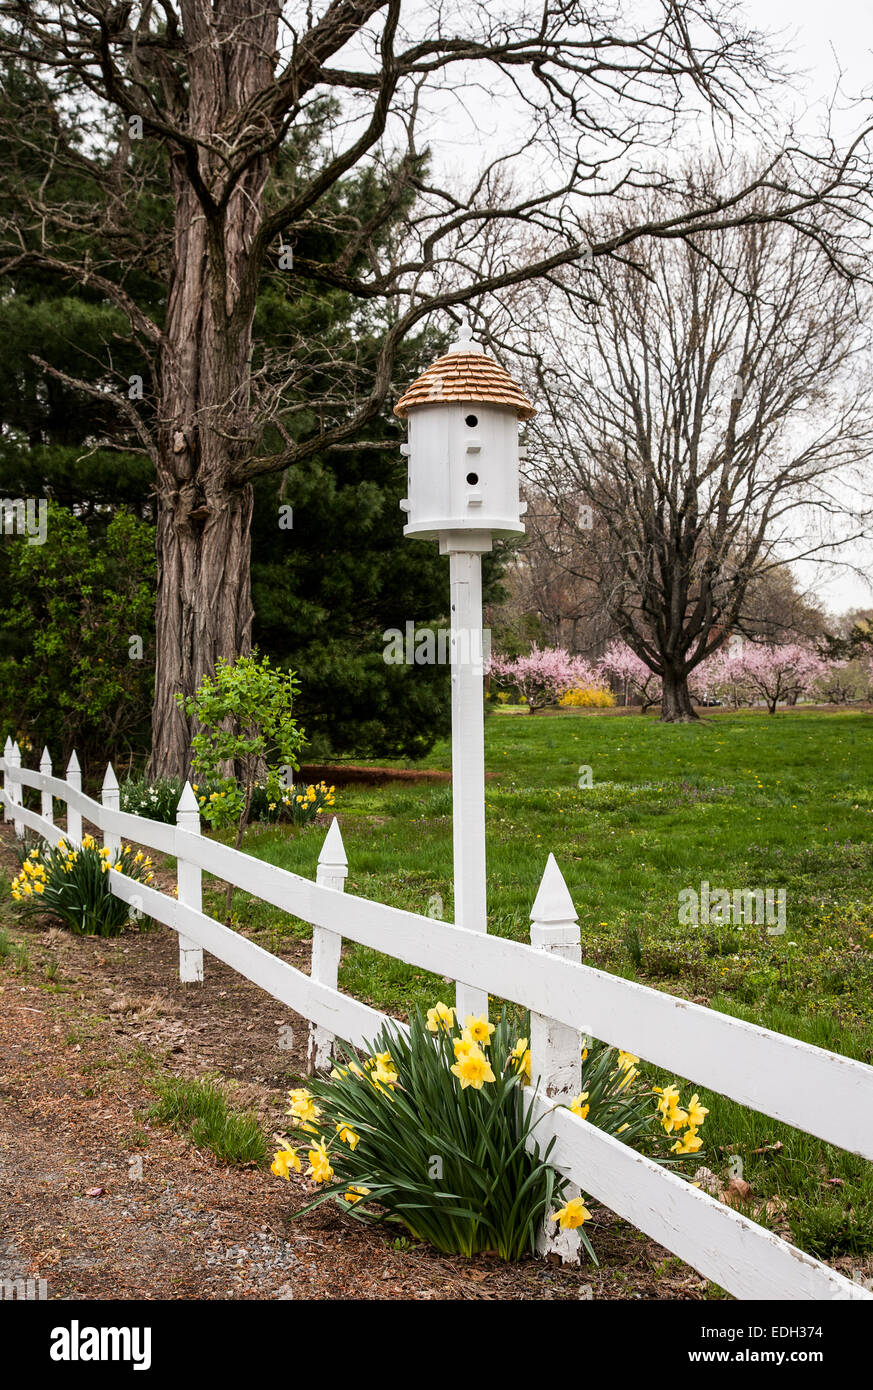 Birdhouse, bordure de la clôture de cornichons blancs et fleurs de jonquille printanière sur une ferme à Allentown, New Jersey, États-Unis Banque D'Images